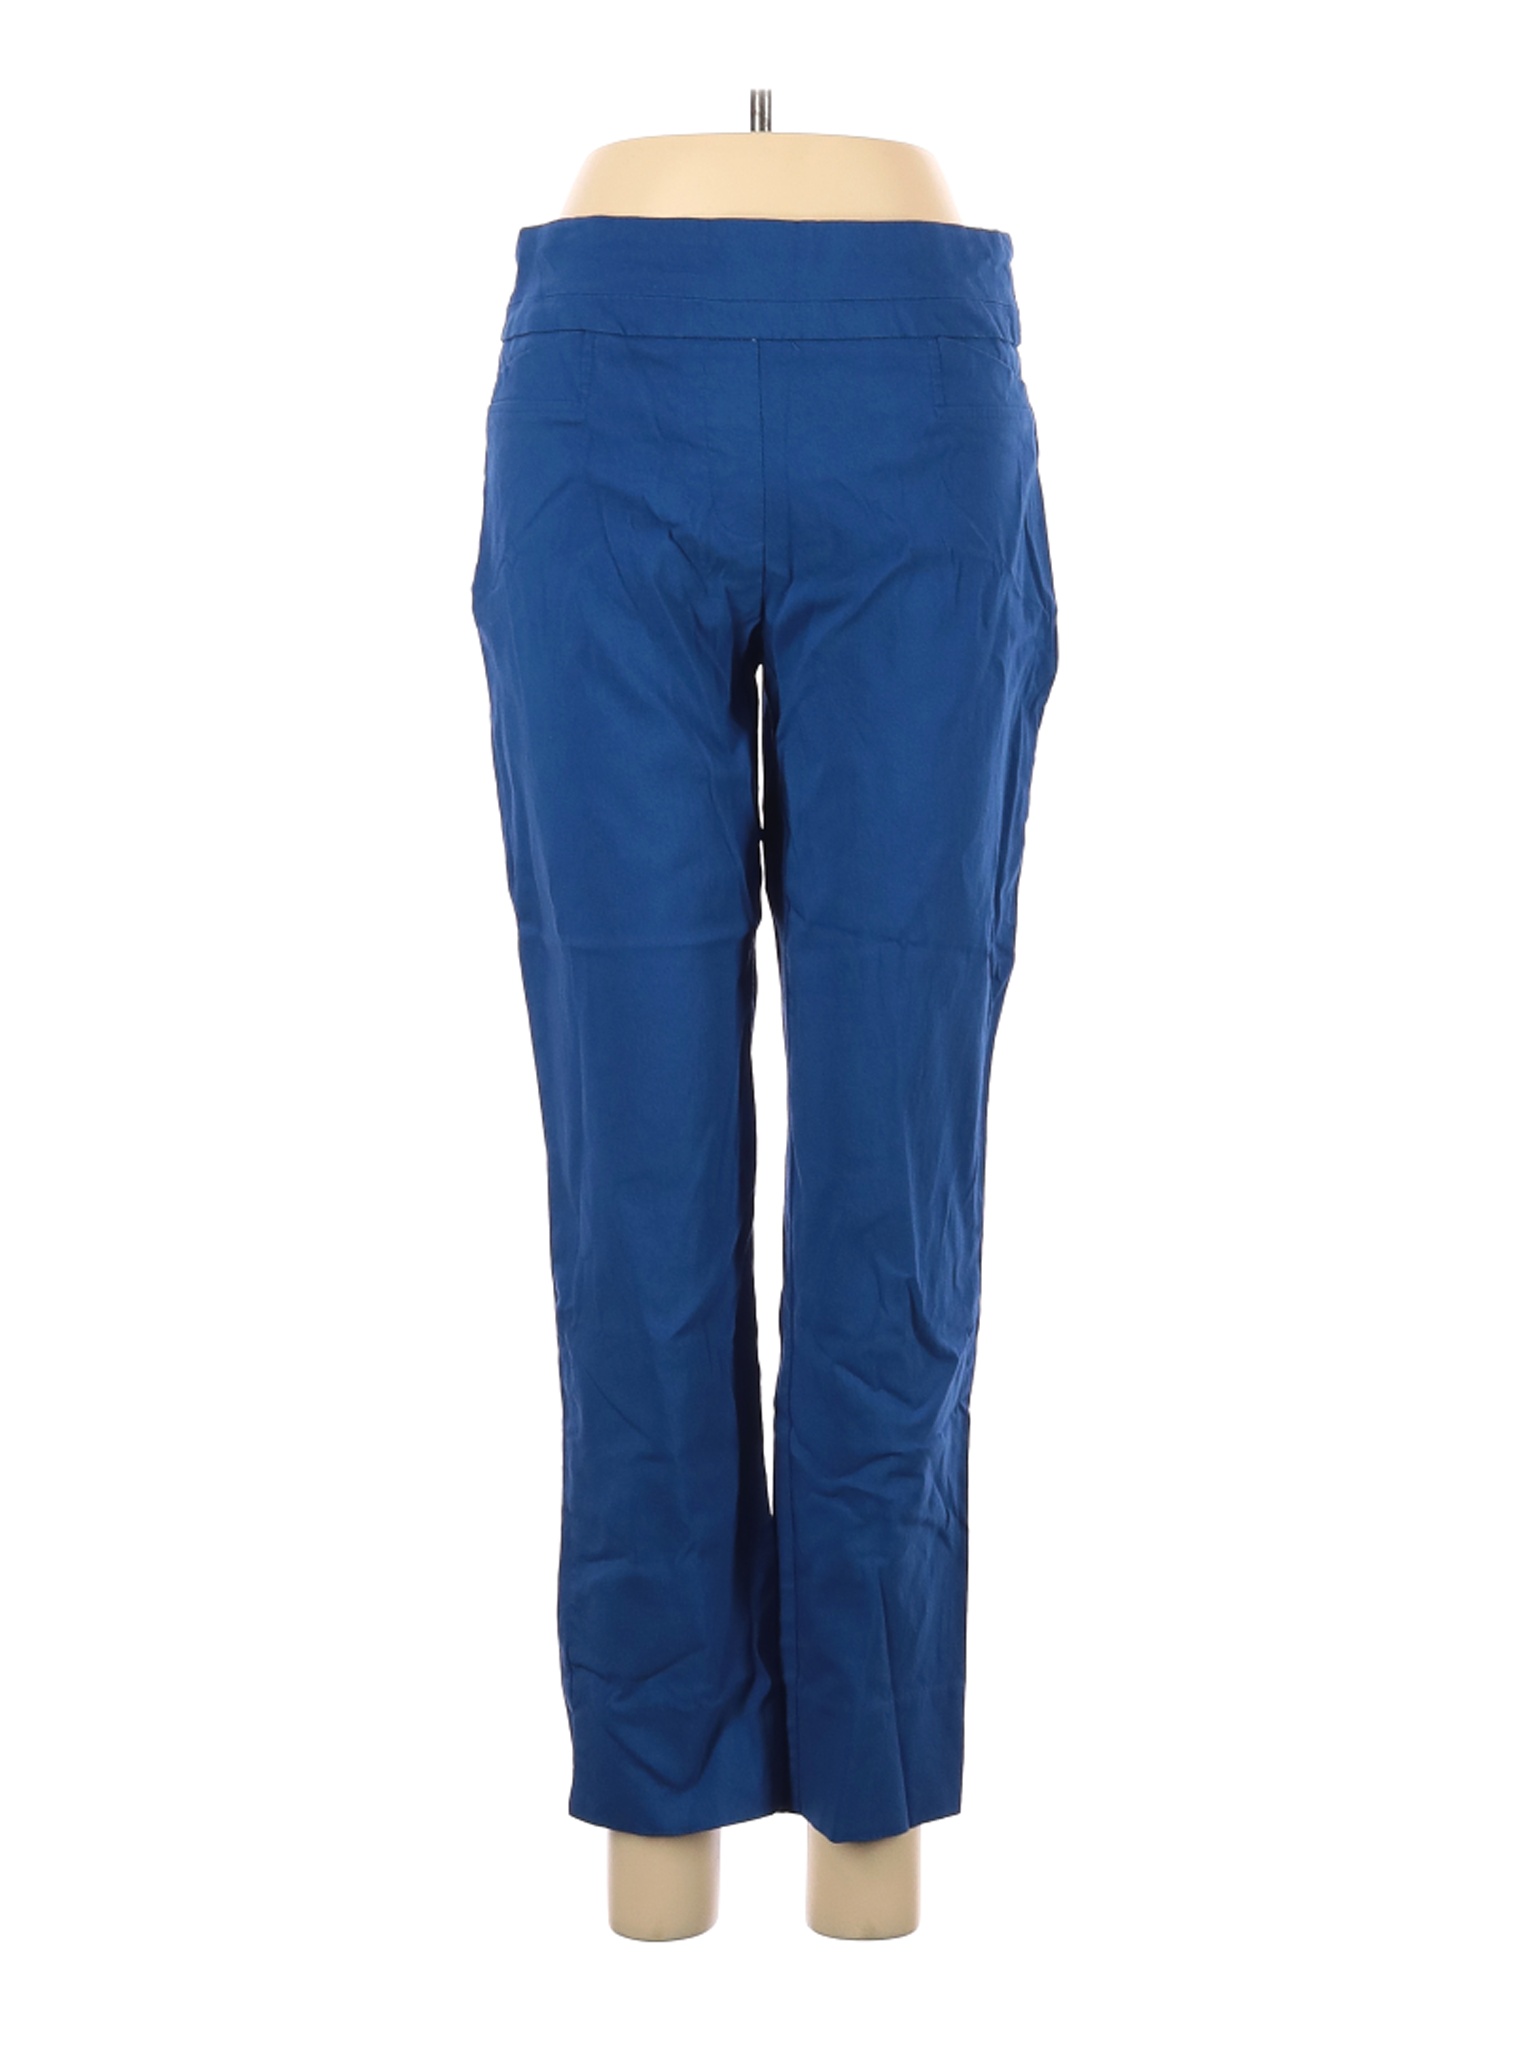 Renuar Women Blue Casual Pants 6 | eBay